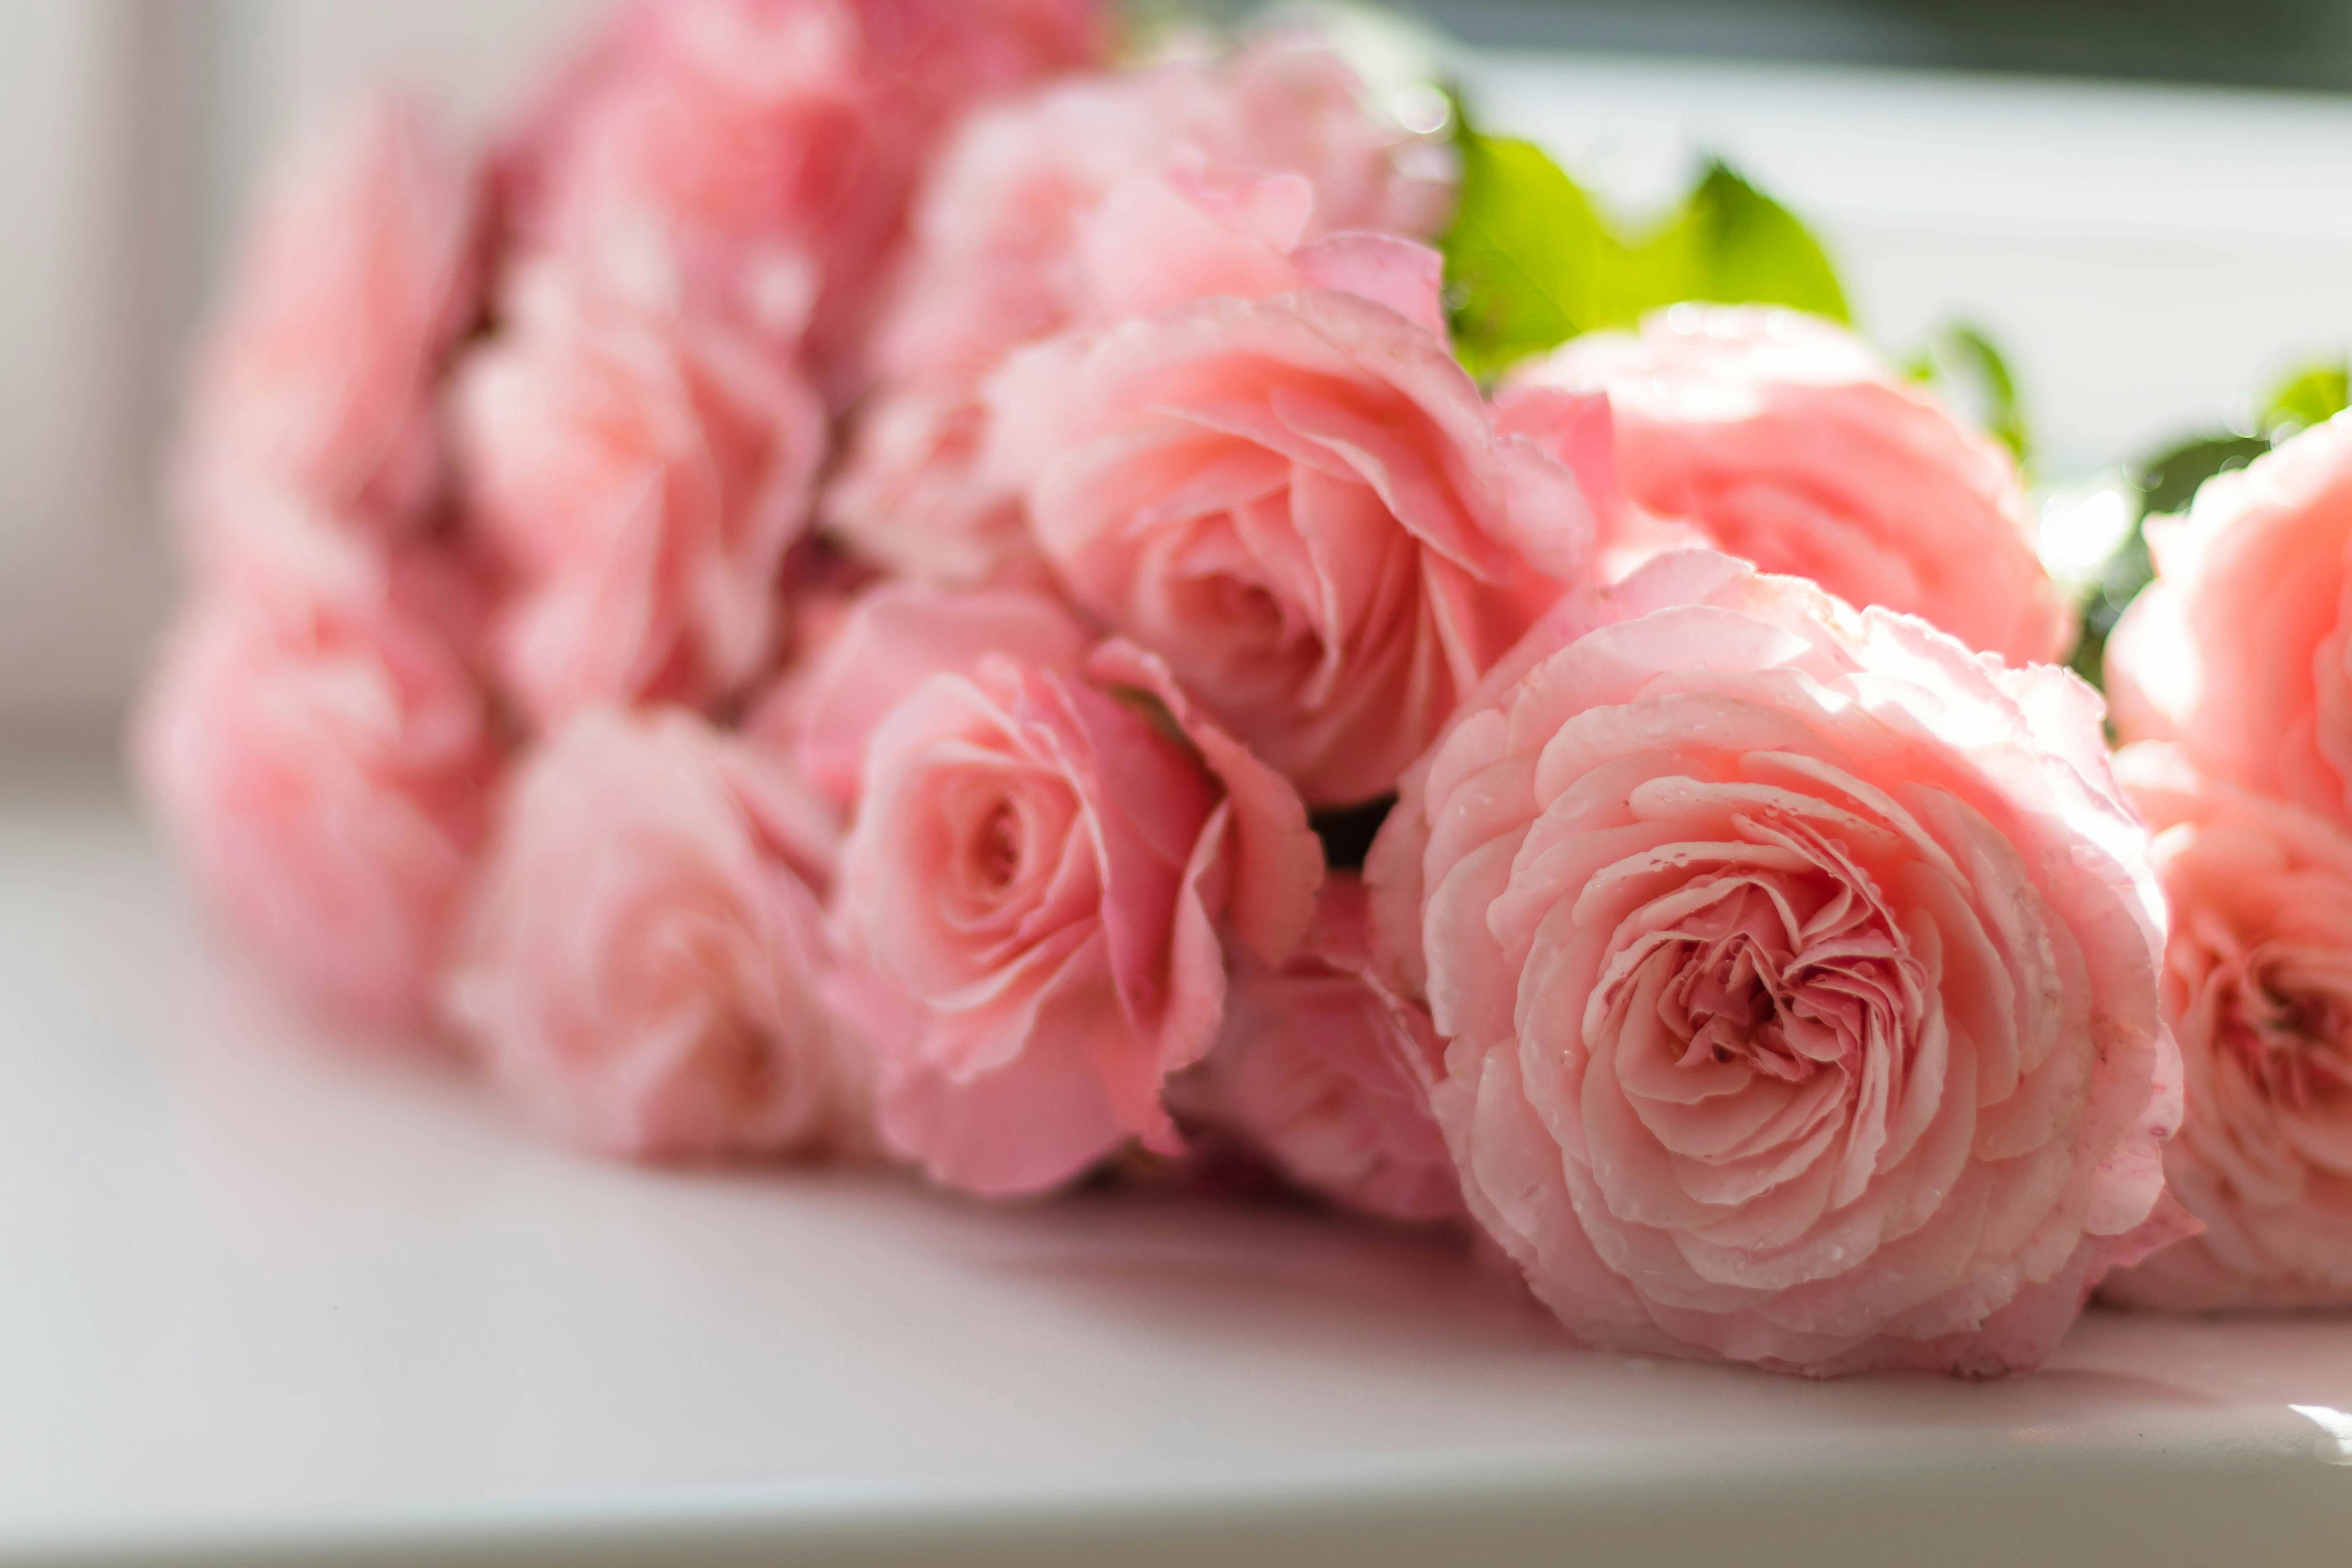 ピンクの牡丹の花のセレクティブフォーカス写真 無料の写真素材